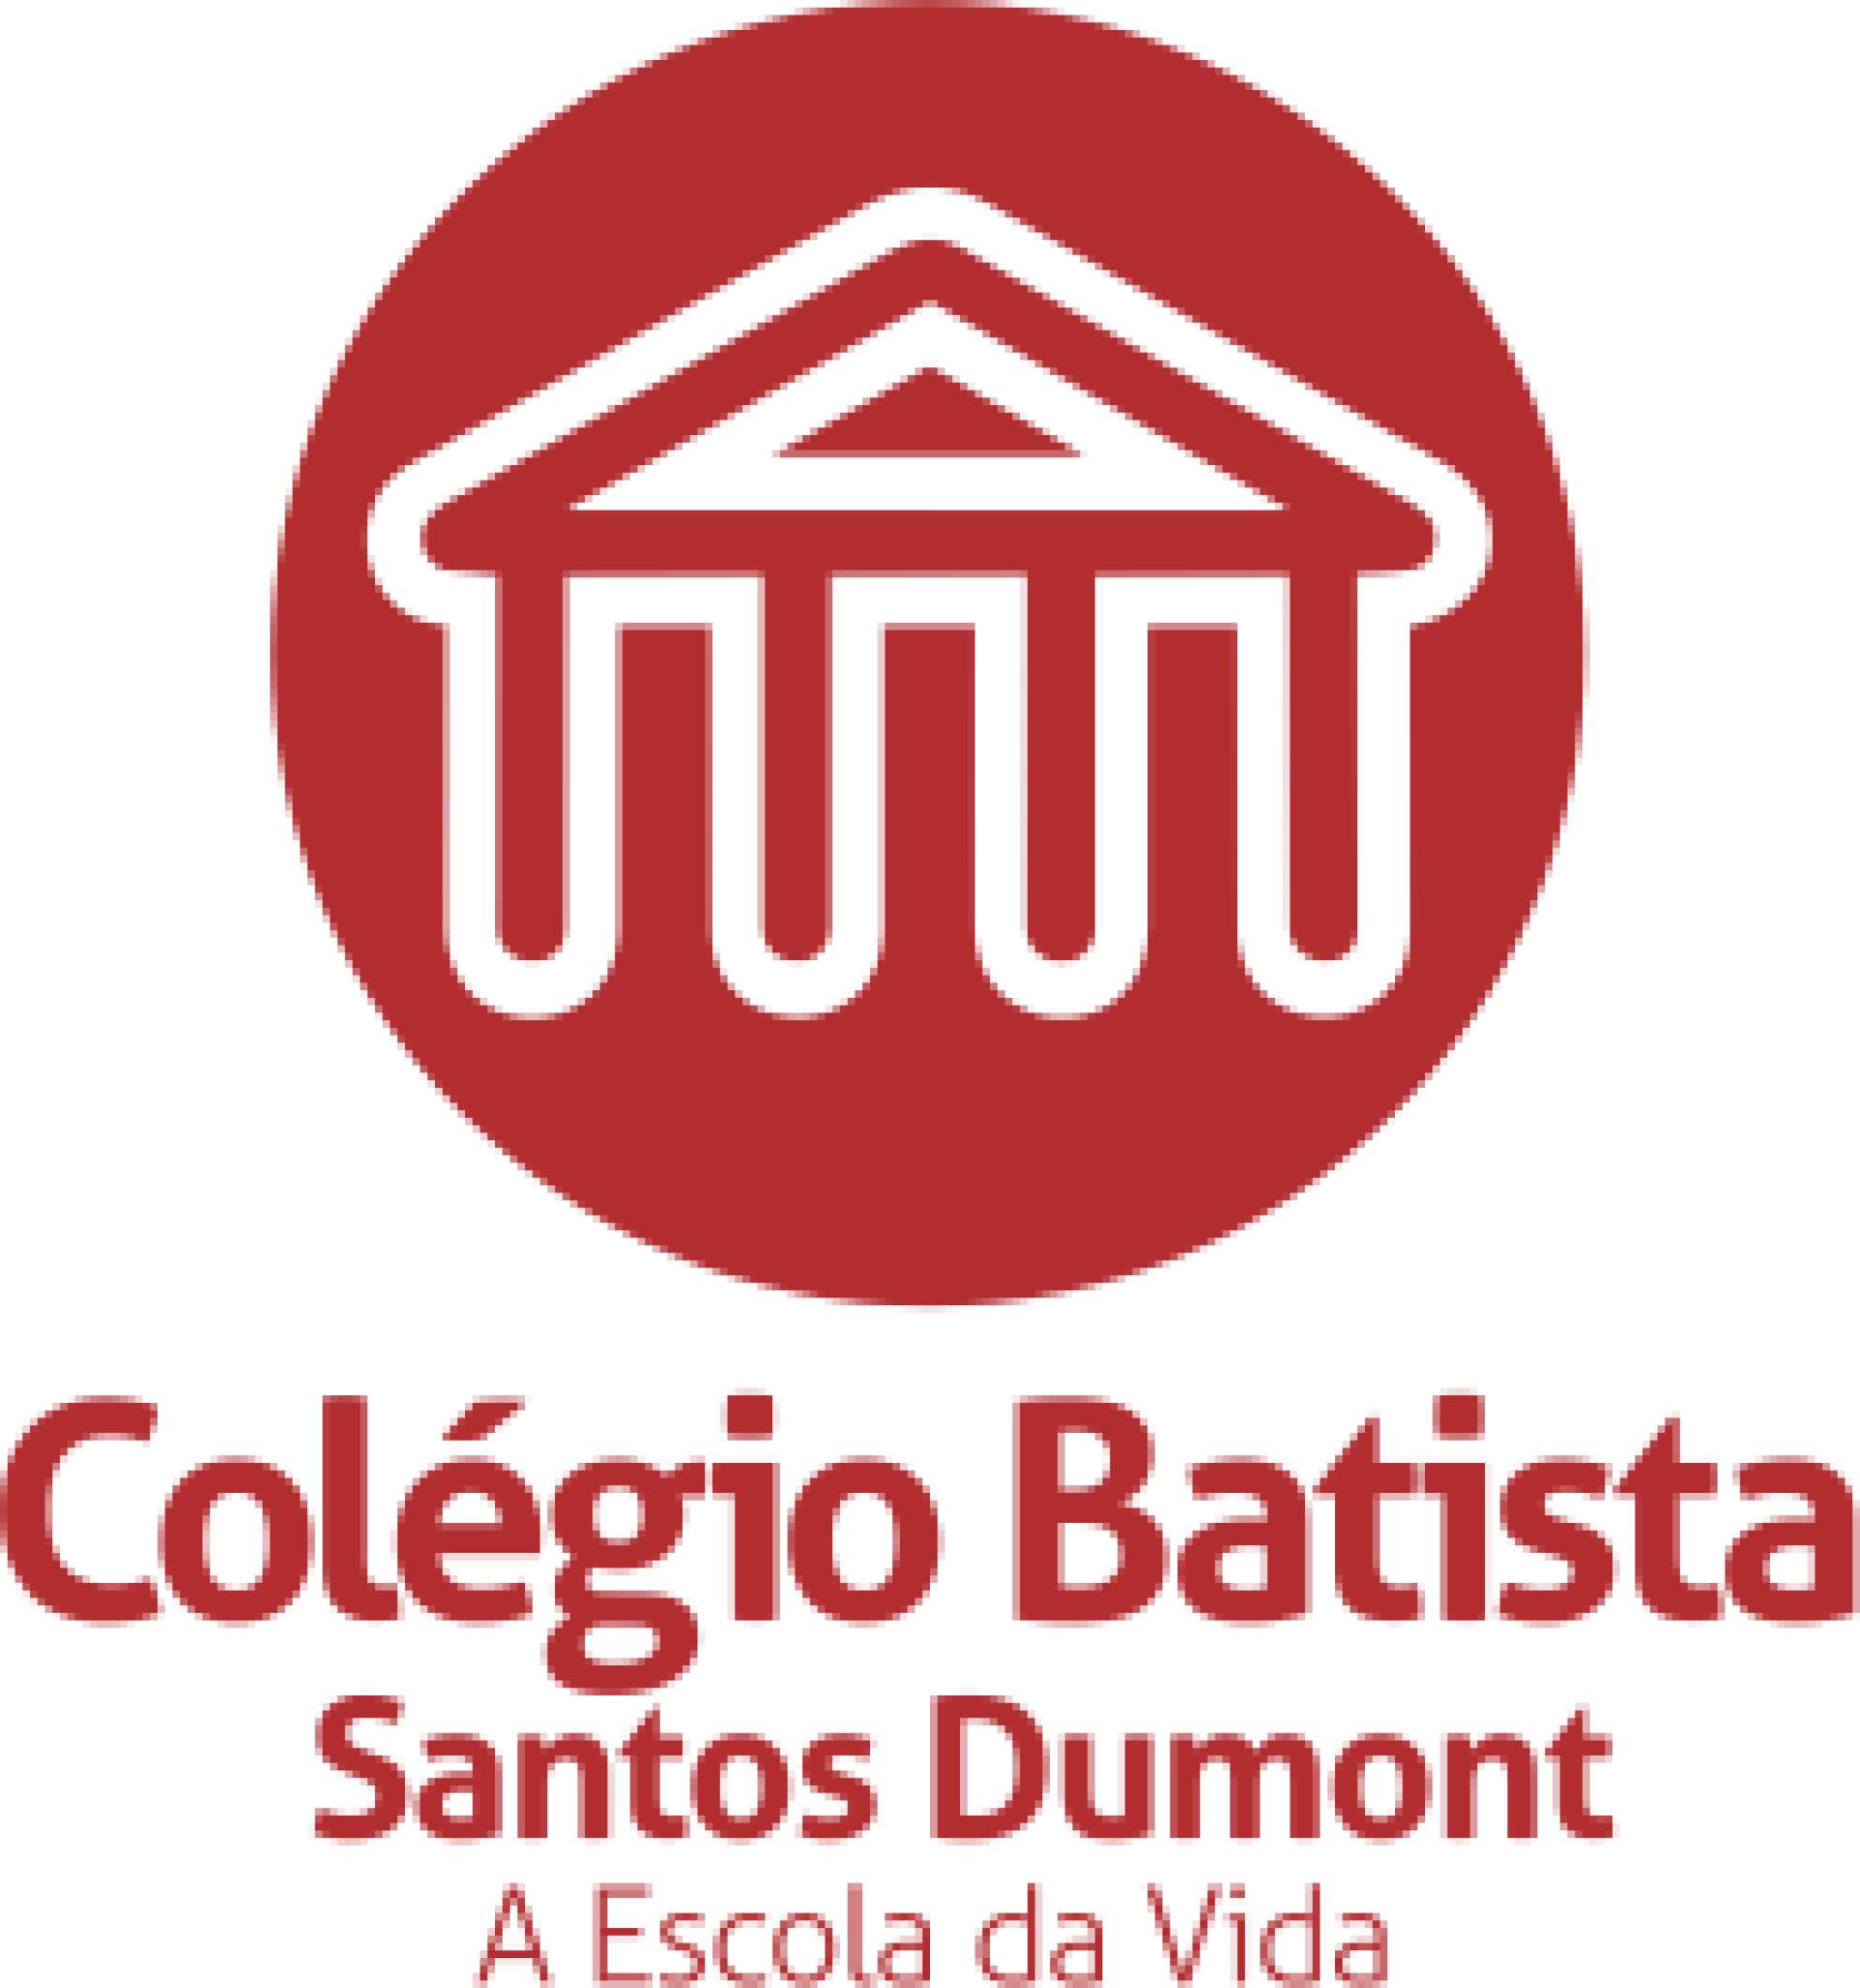 Colegio Batista 